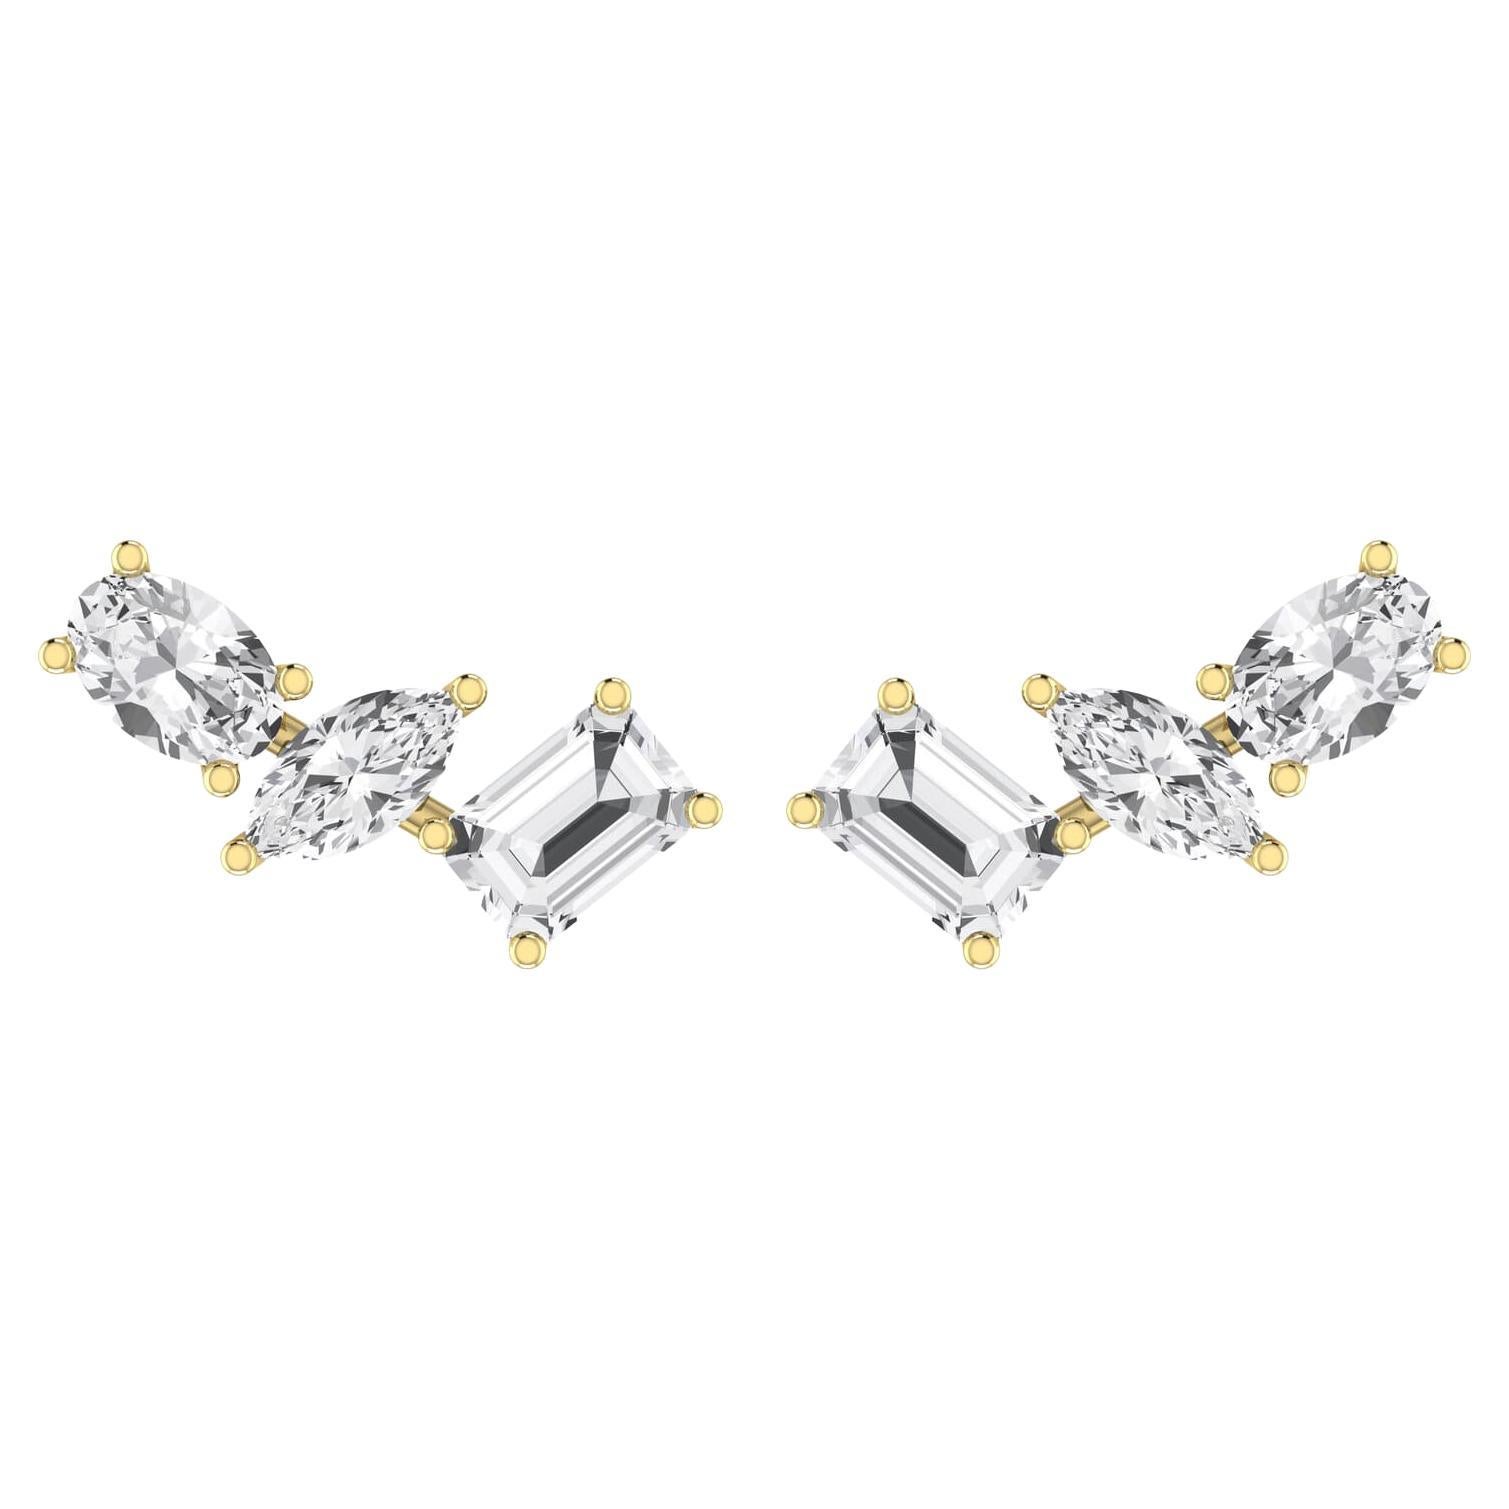 Boucles d'oreilles en or jaune 18 carats avec diamants de différentes formes